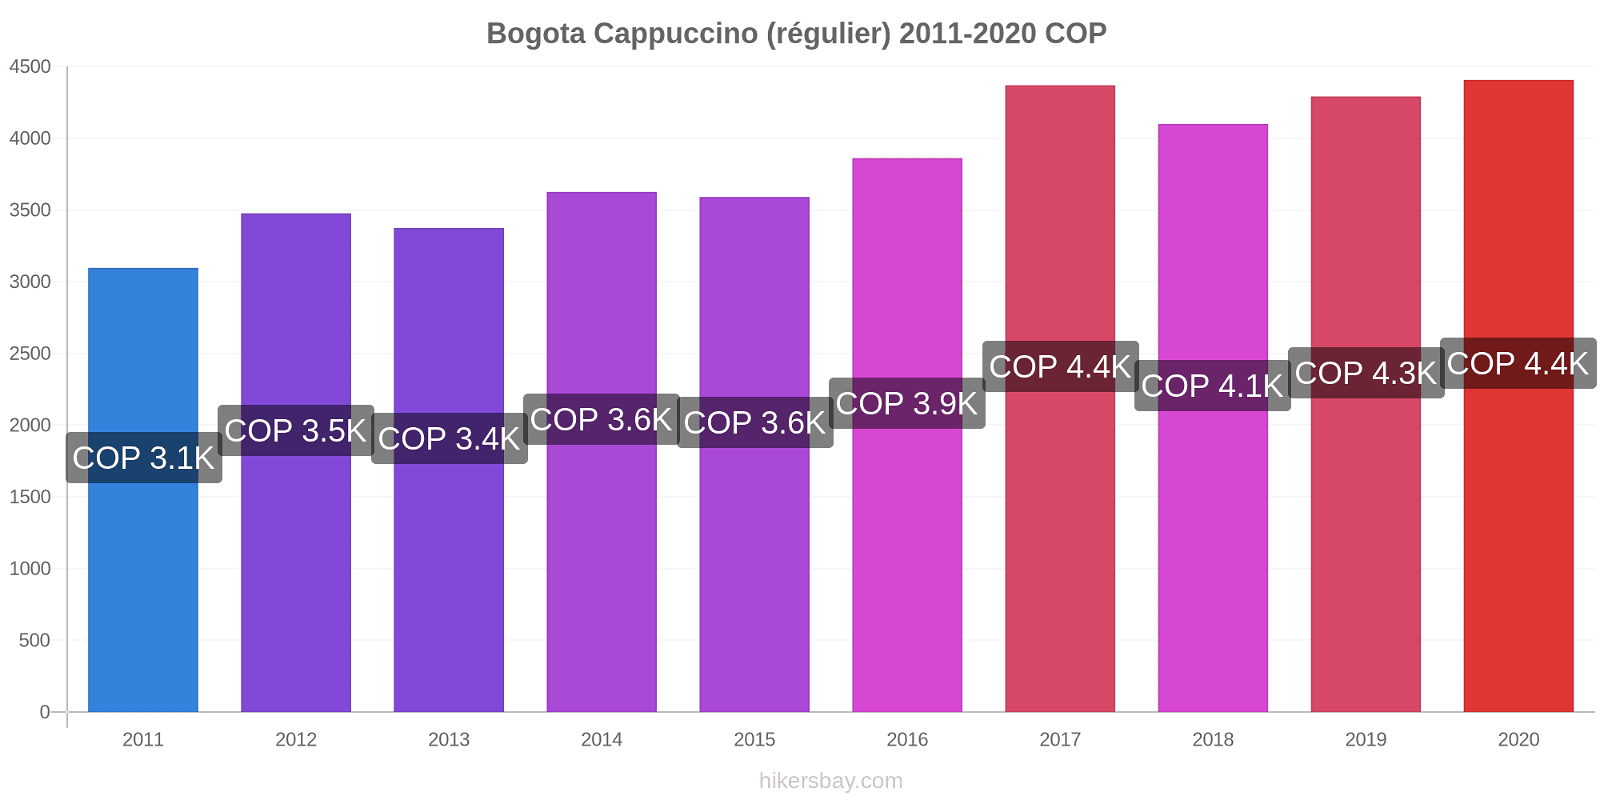 Bogota changements de prix Cappuccino (régulier) hikersbay.com